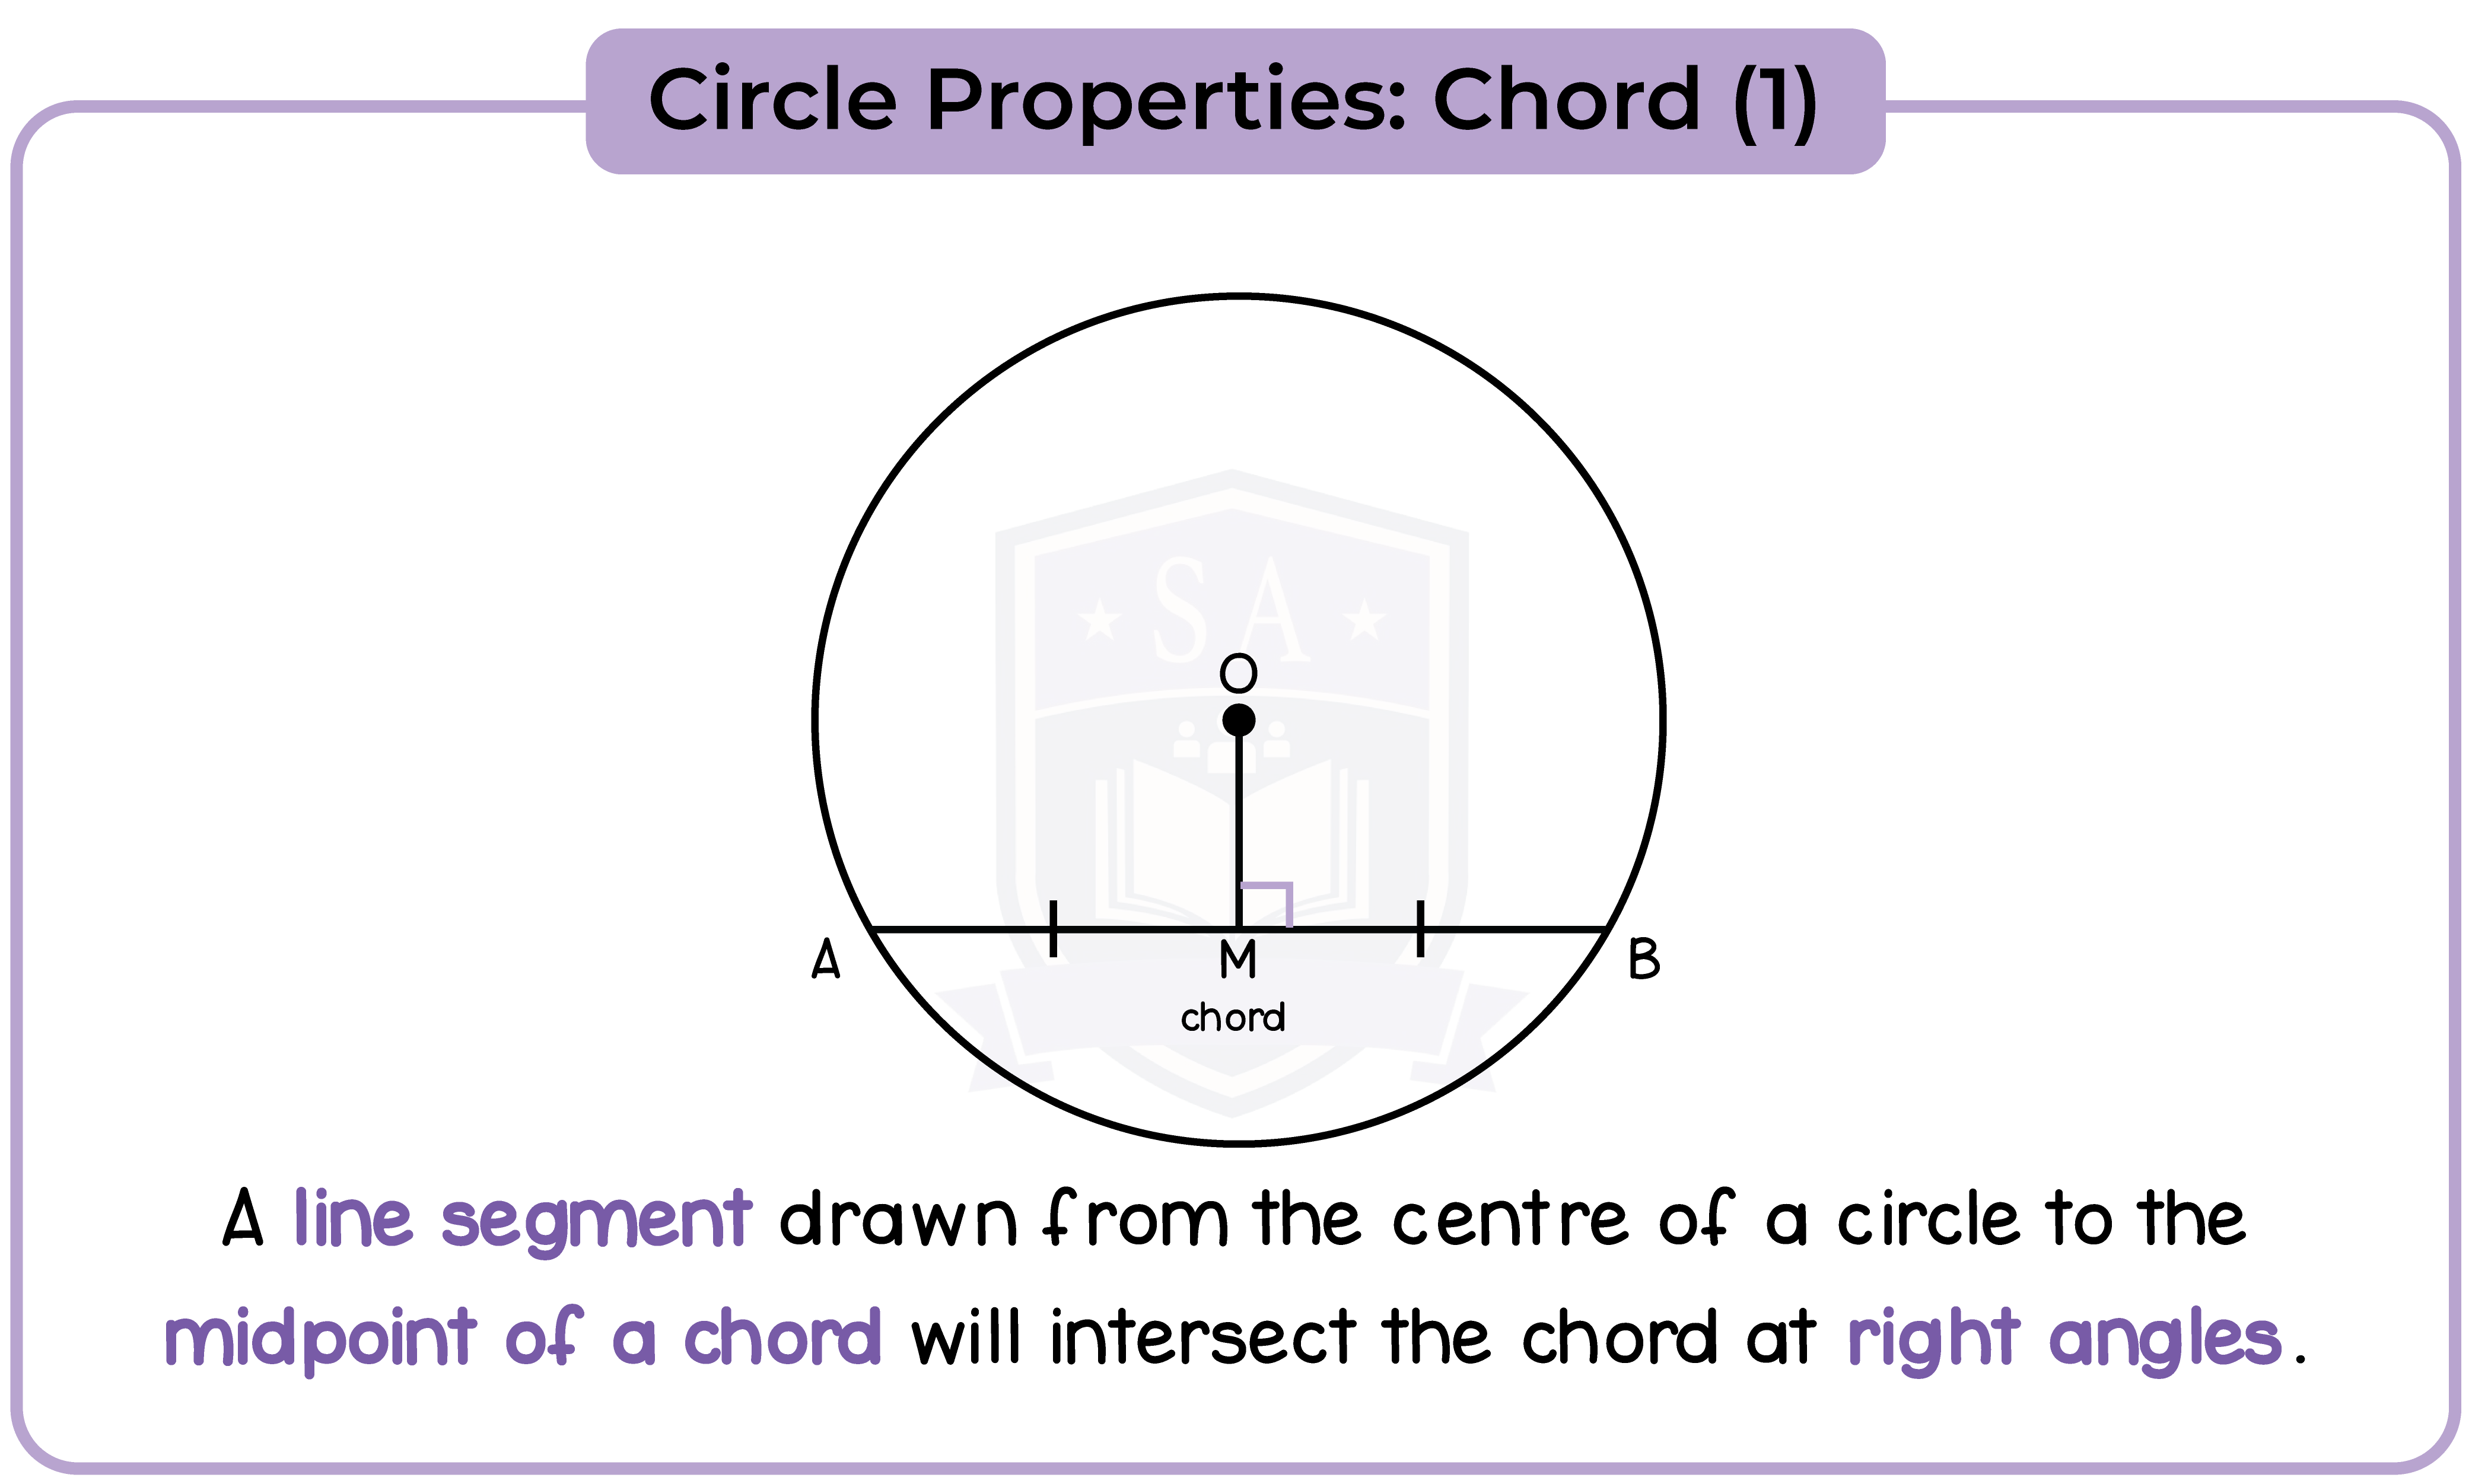 edexcel_igcse_mathematics a_topic 30_circle properties_002_Circle Properties: Chord (1)